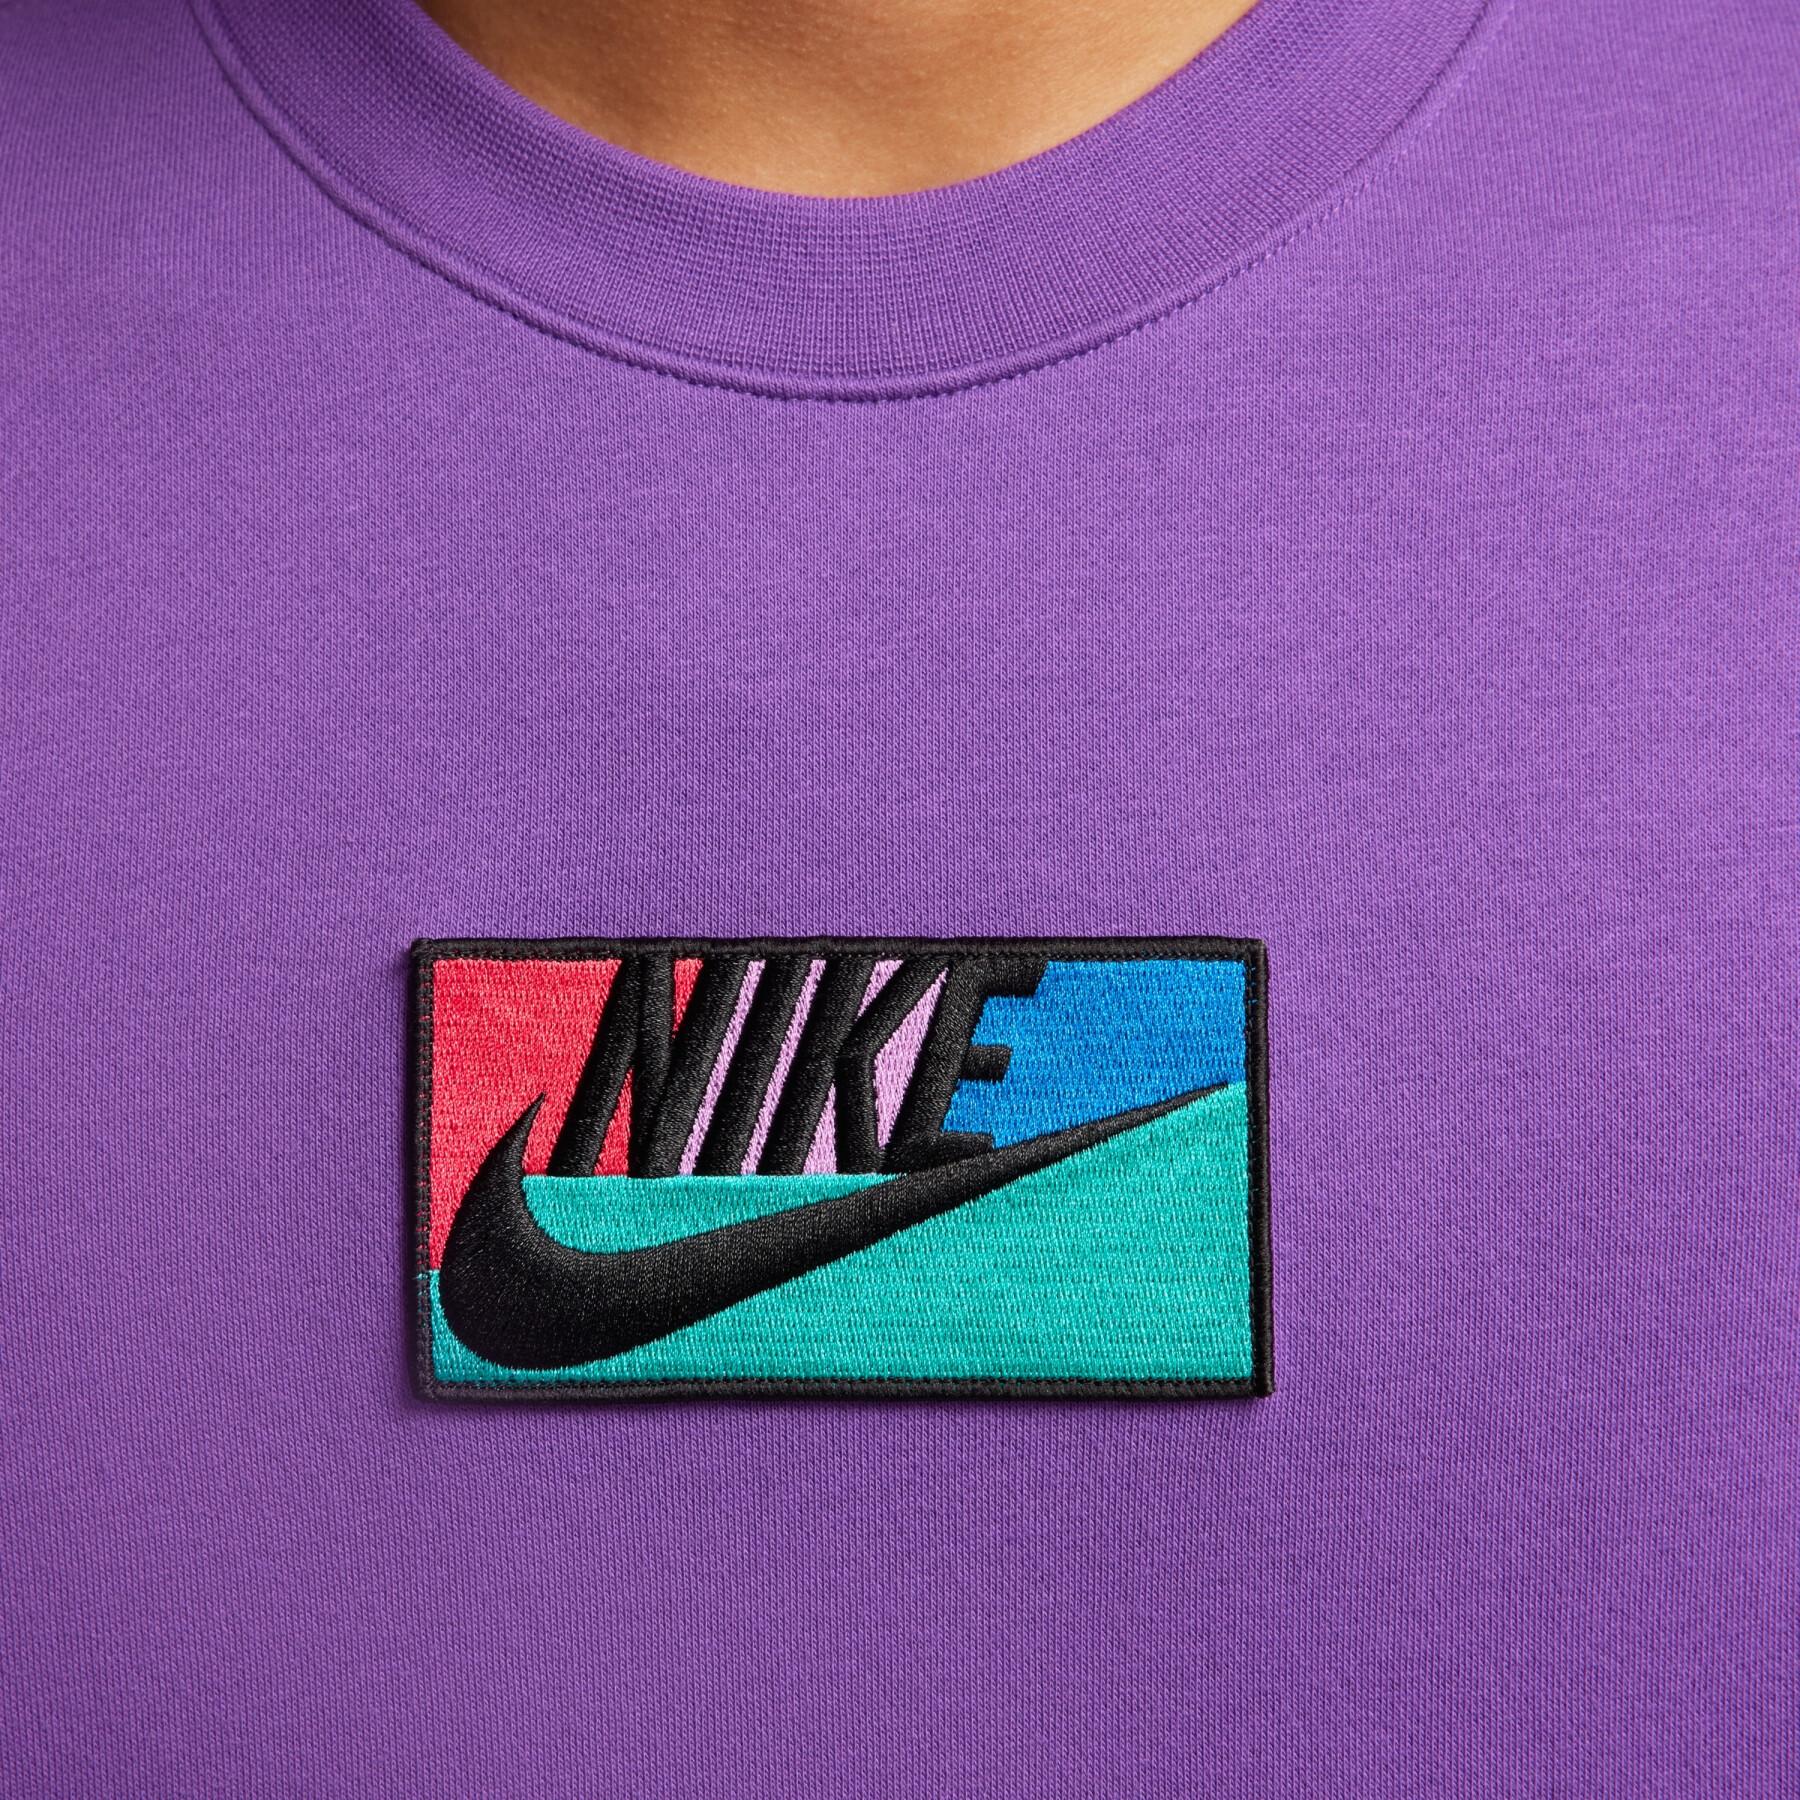 Sweatshirt Nike Club Fleece+